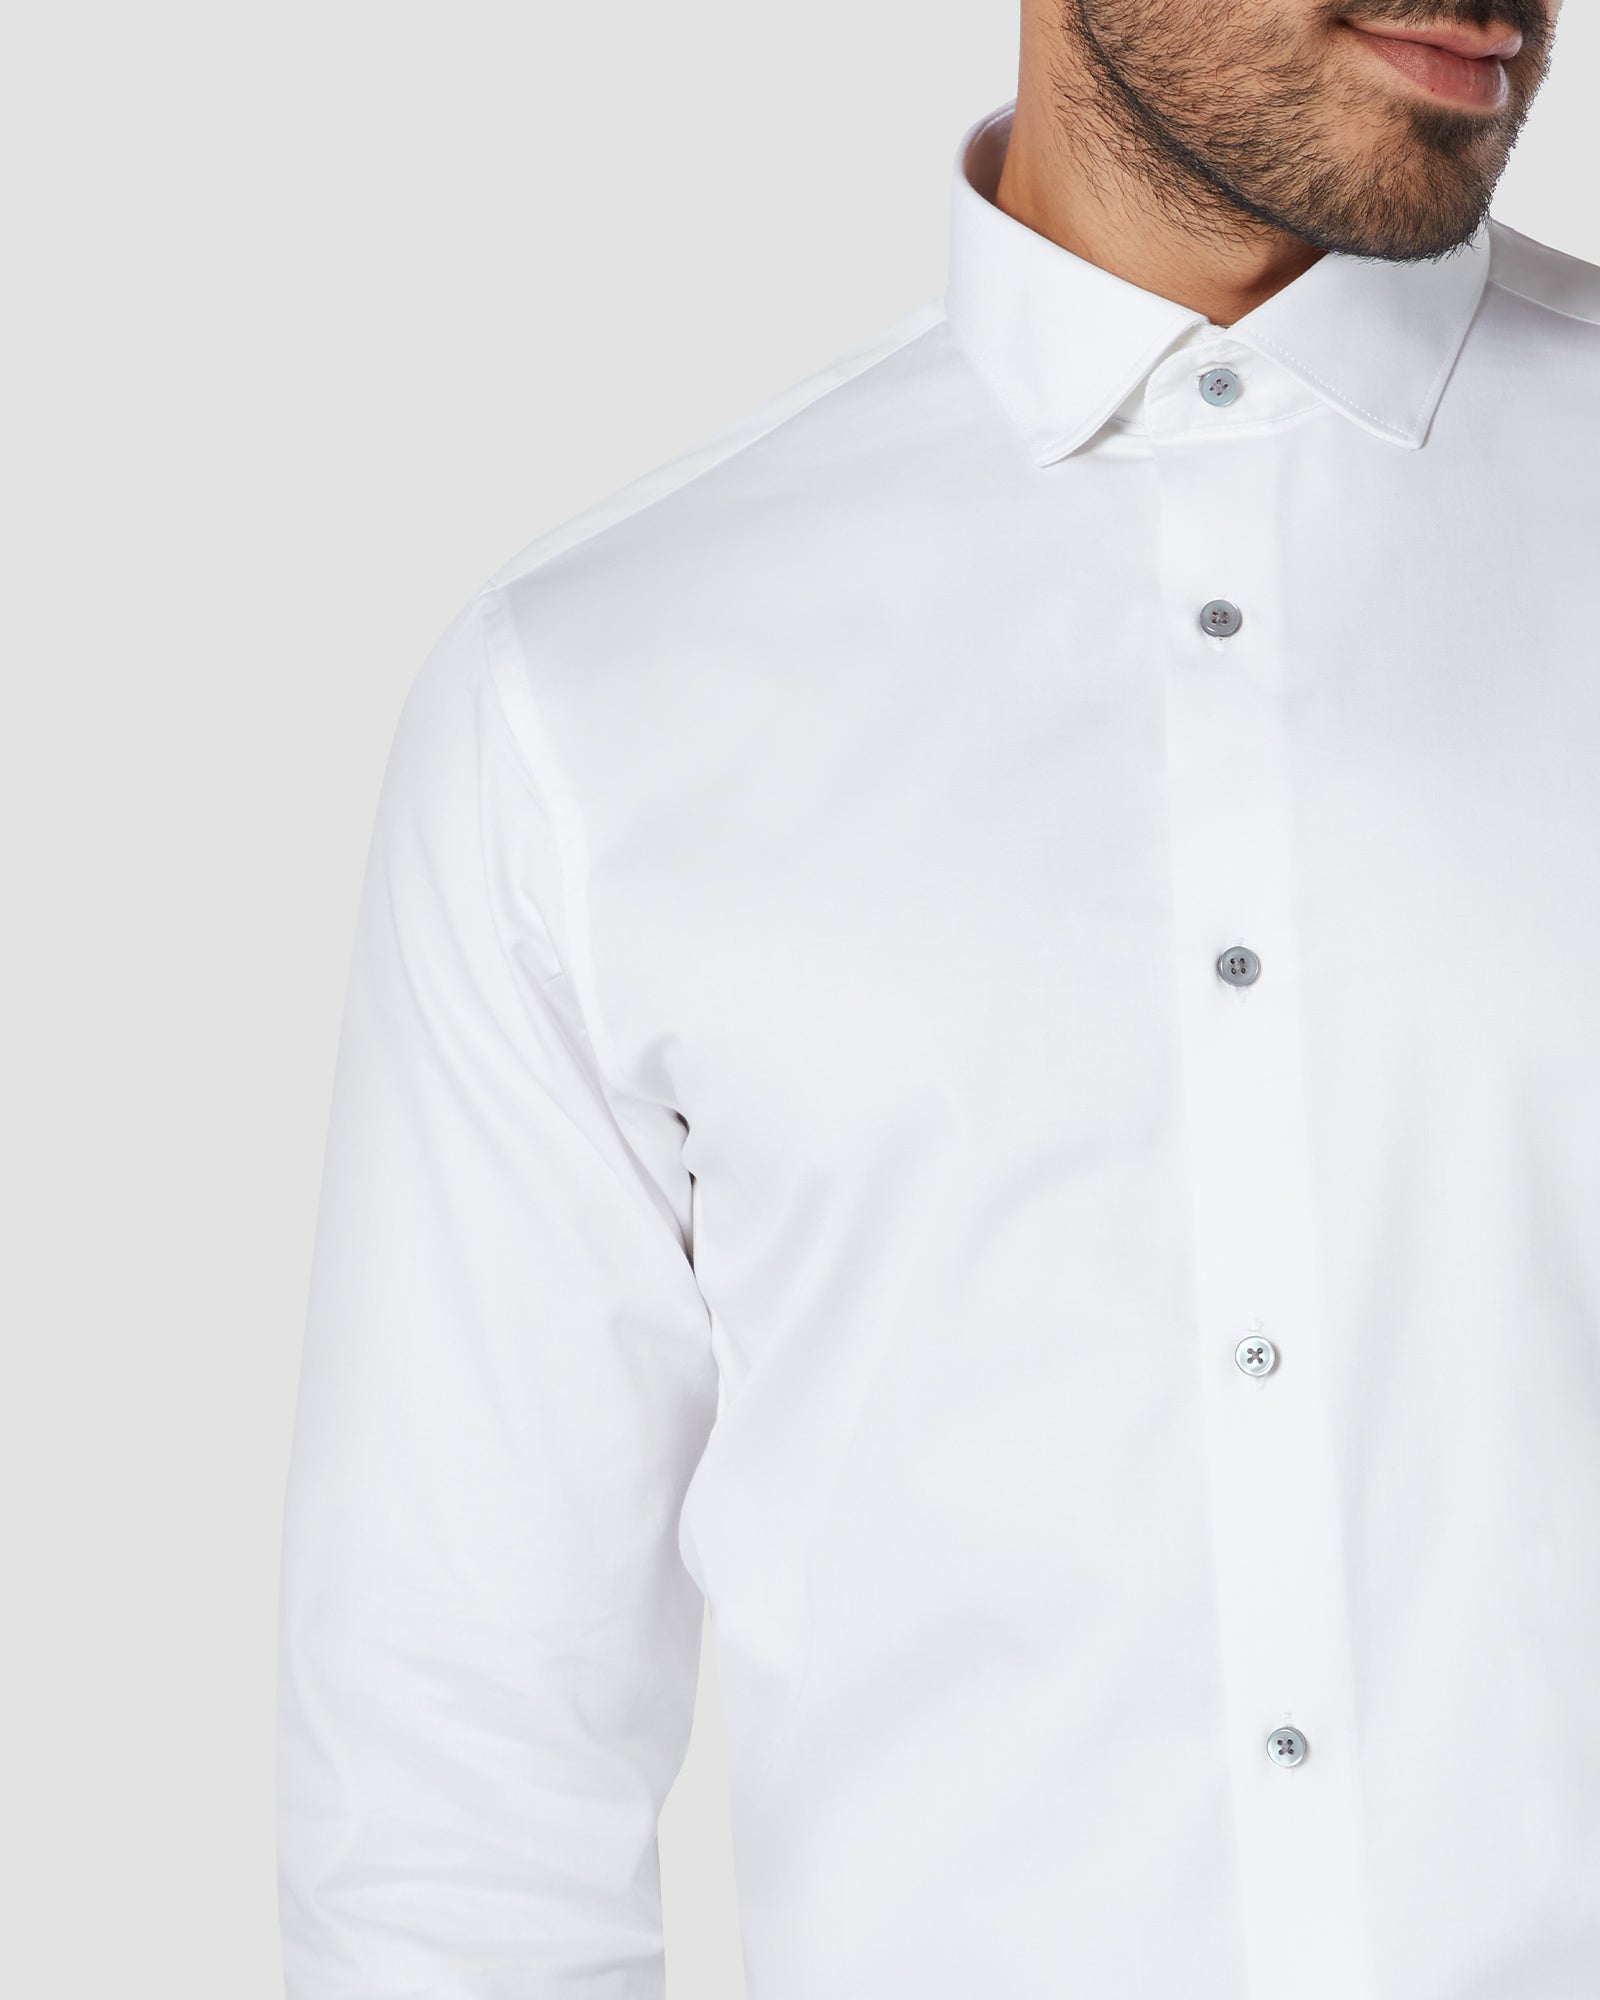 Soktas Satin Shirt - White